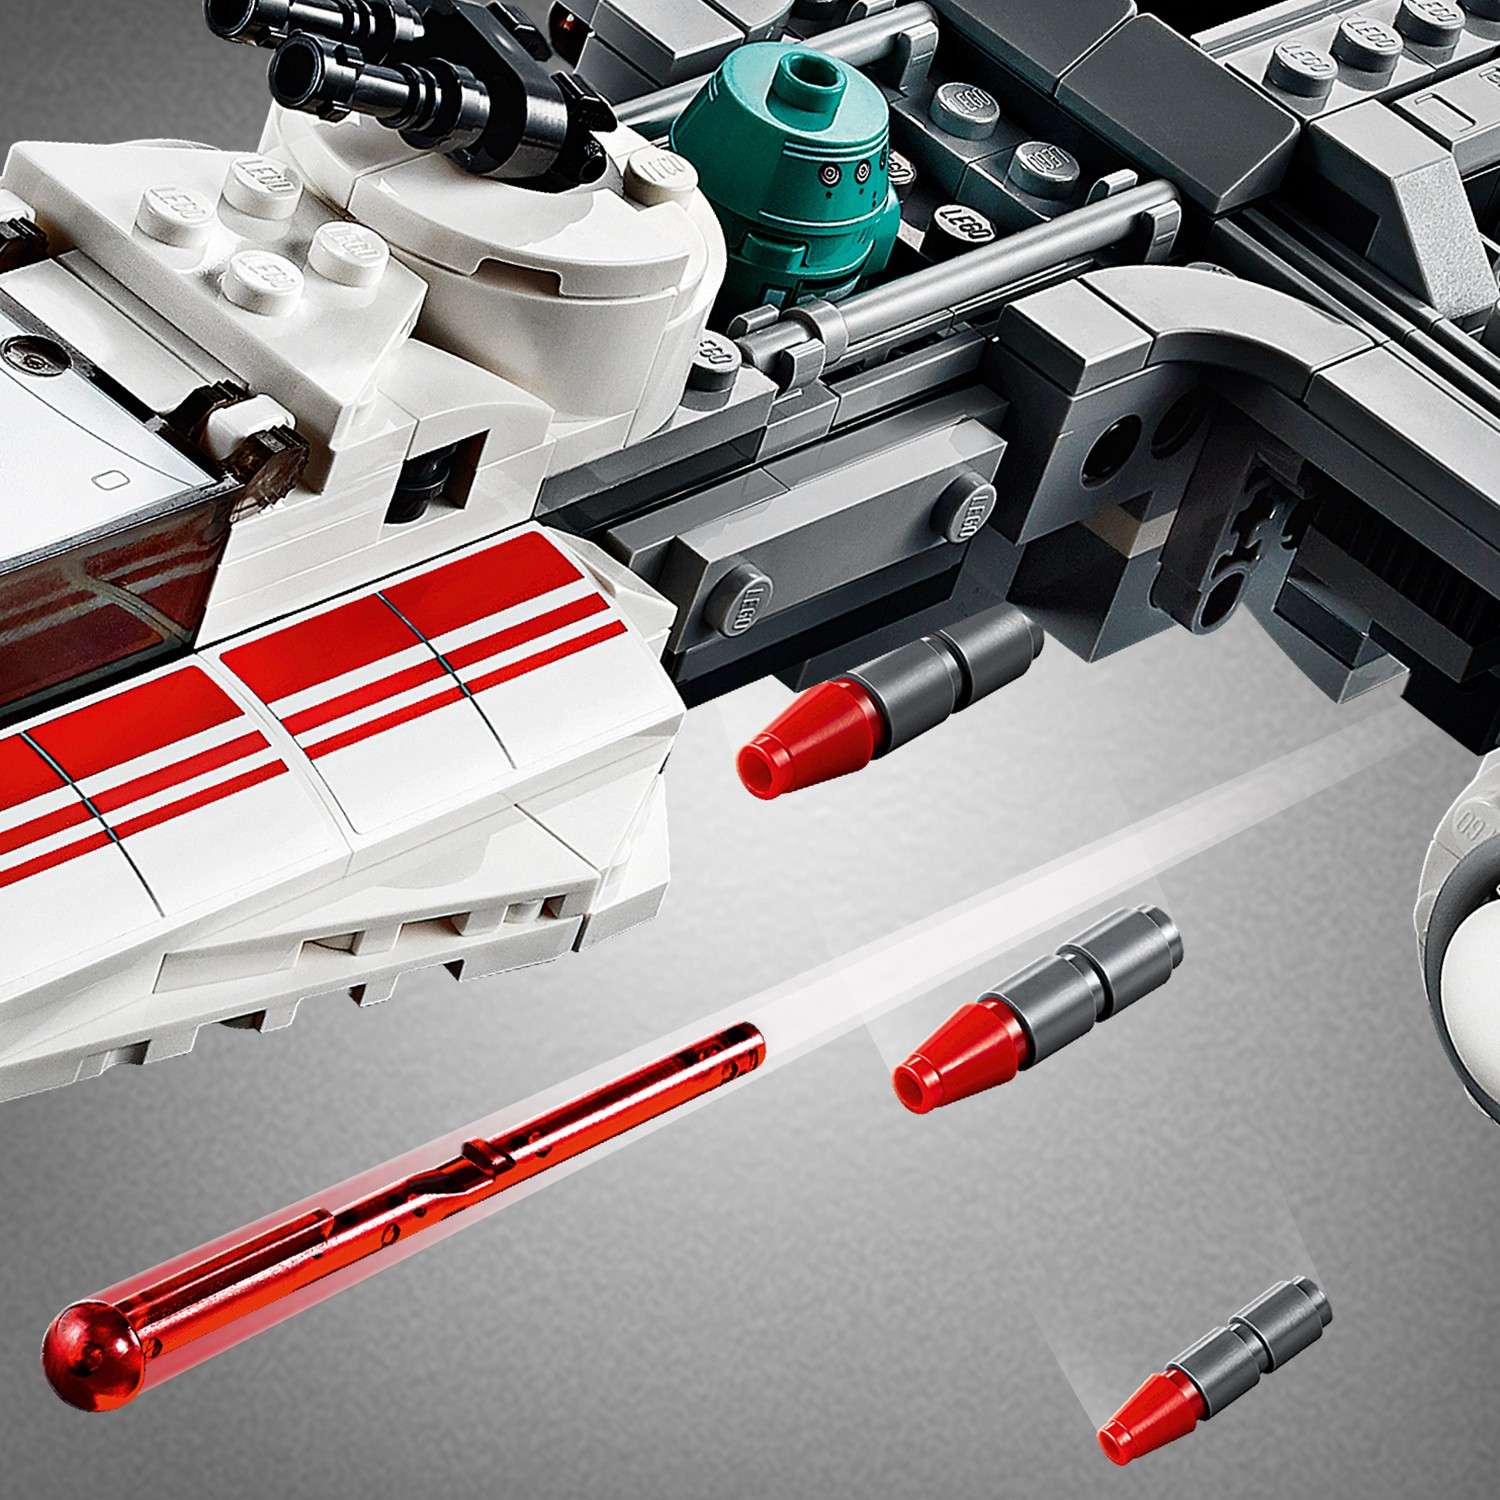 Конструктор LEGO Star Wars Episode IX Звездный истребитель повстанцев типа Y 75249 - фото 10